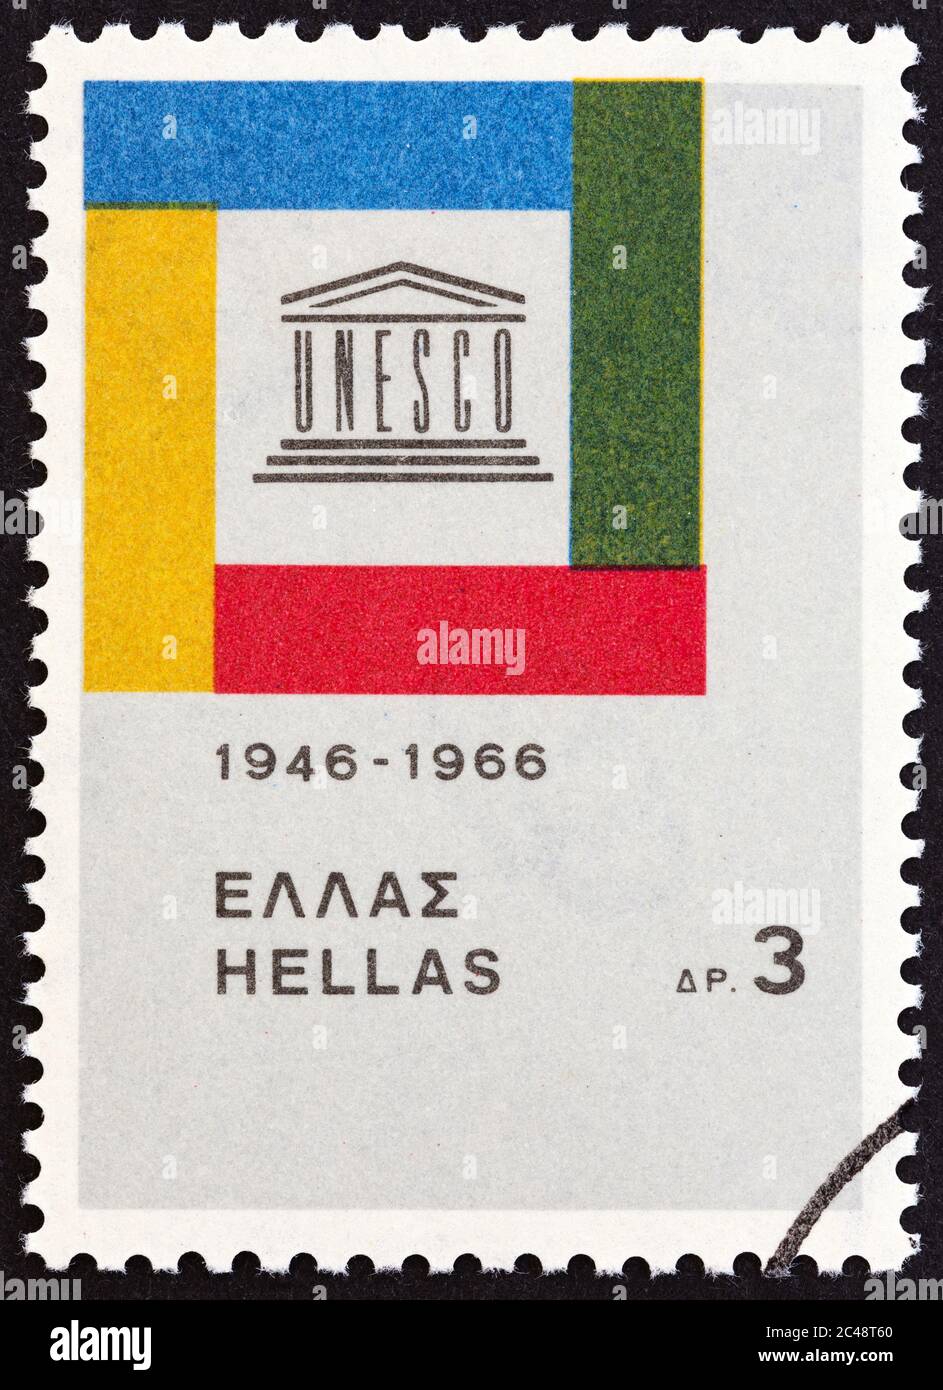 GRIECHENLAND - UM 1966: Eine in Griechenland gedruckte Briefmarke zum 20. Jahrestag der UNESCO zeigt Emblem, um 1966. Stockfoto